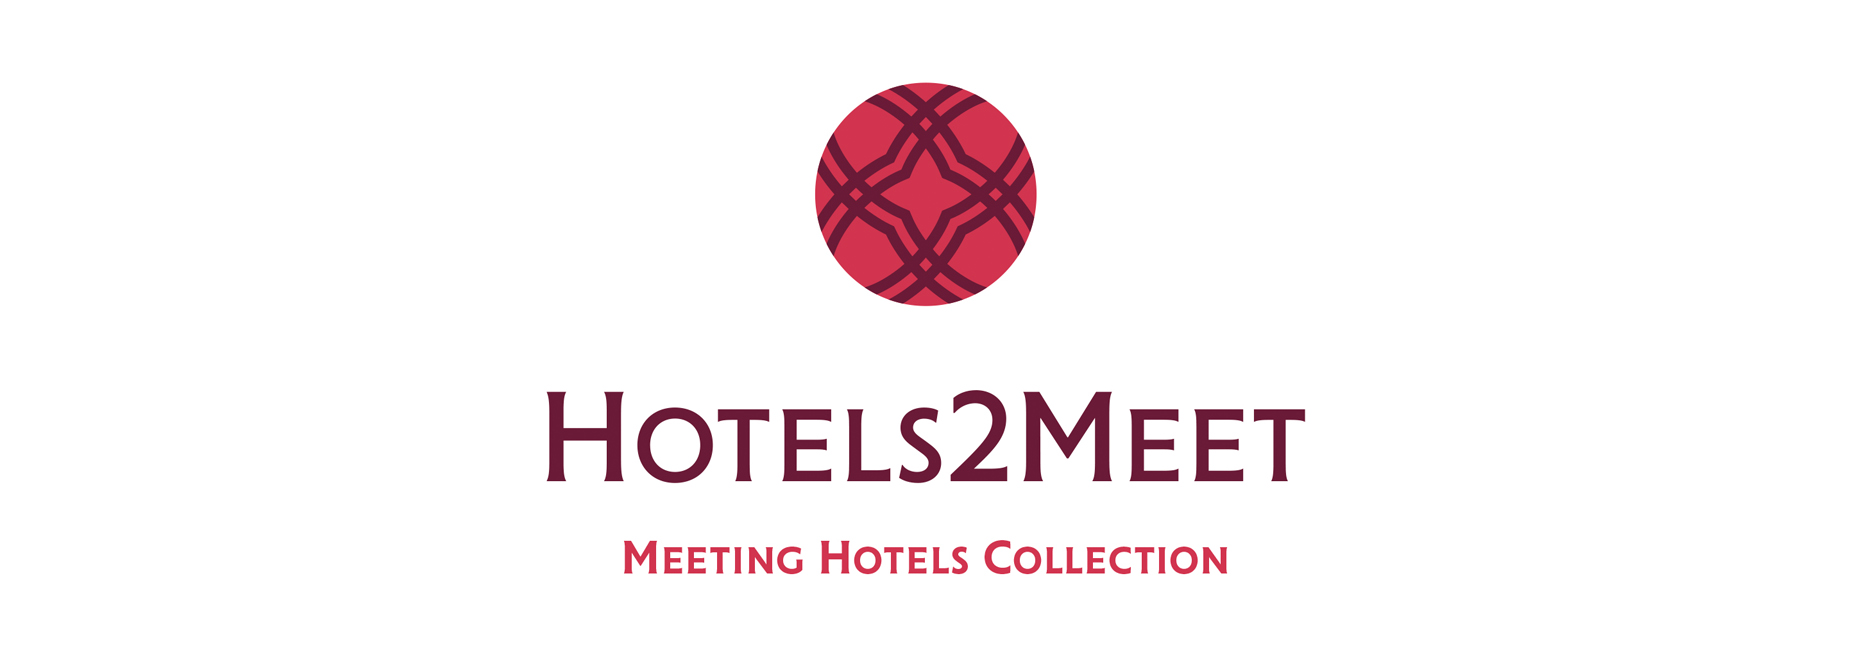 hotels2meet lp-1